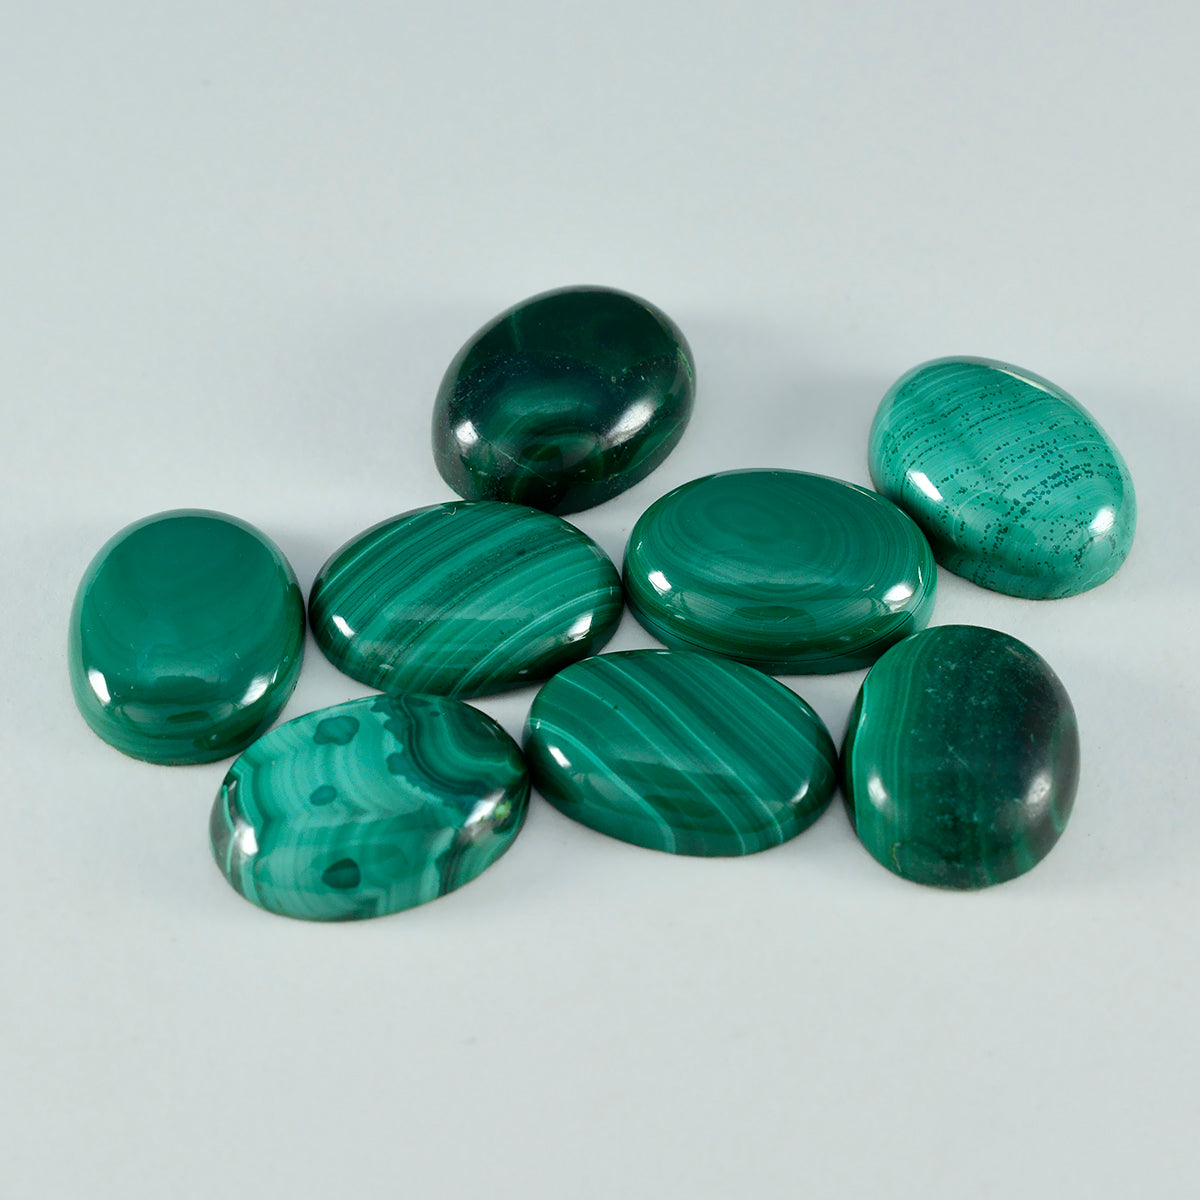 Riyogems 1 Stück grüner Malachit-Cabochon, 10 x 12 mm, ovale Form, ein hochwertiger loser Stein